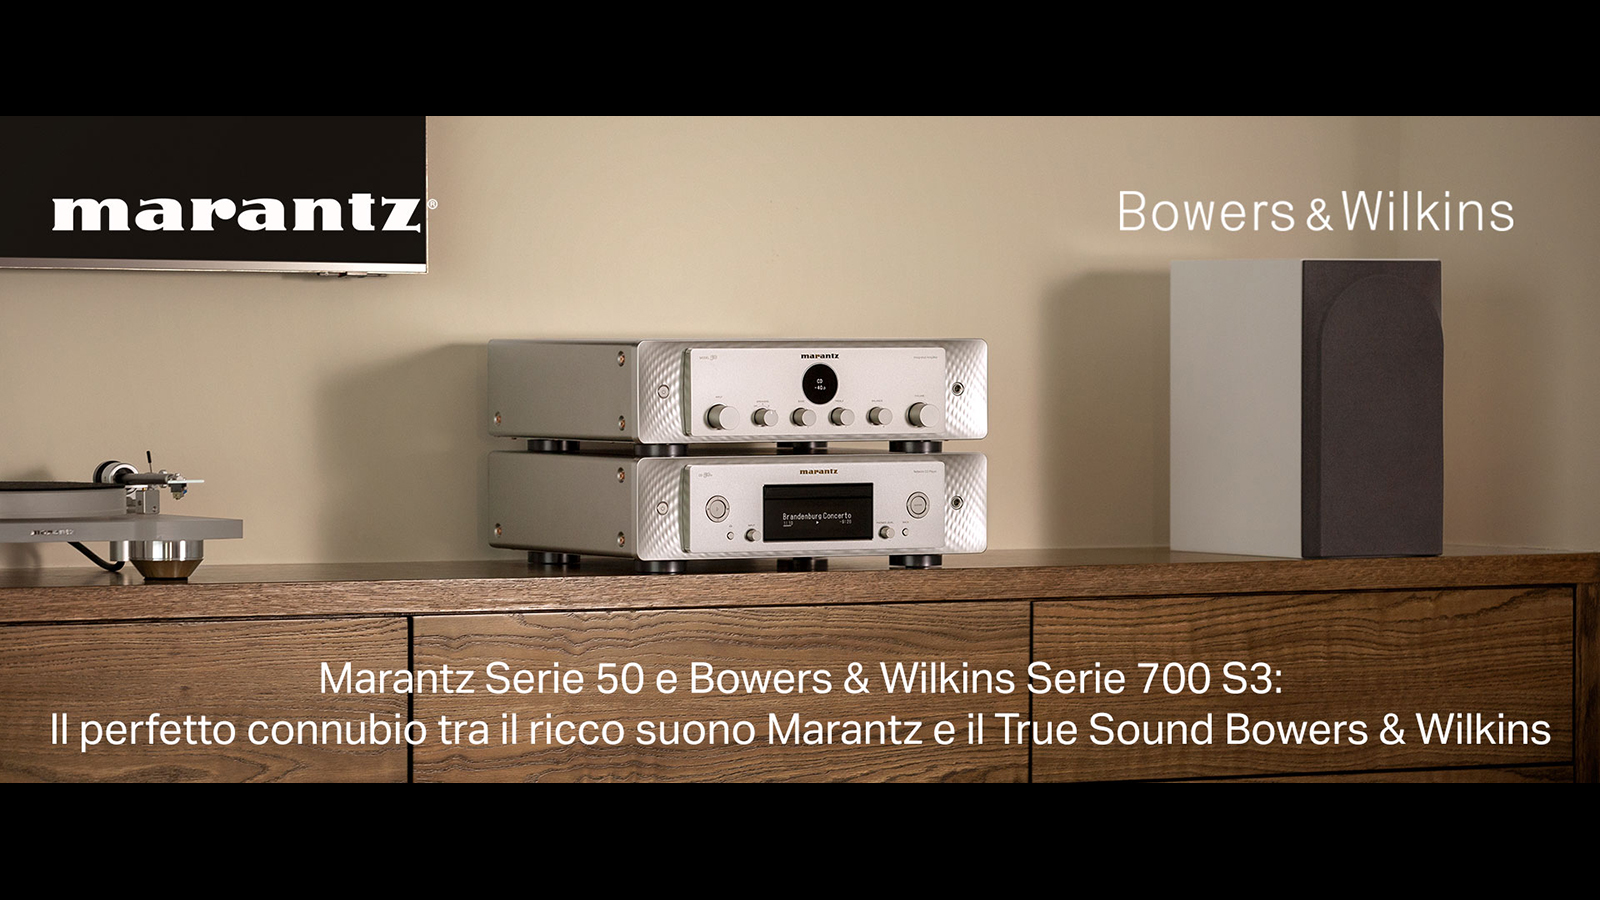 Marantz Serie 50 Bowers & Wilkins Serie 700 S3: perfetto connubio e sinergia. Scoprili in negozio!